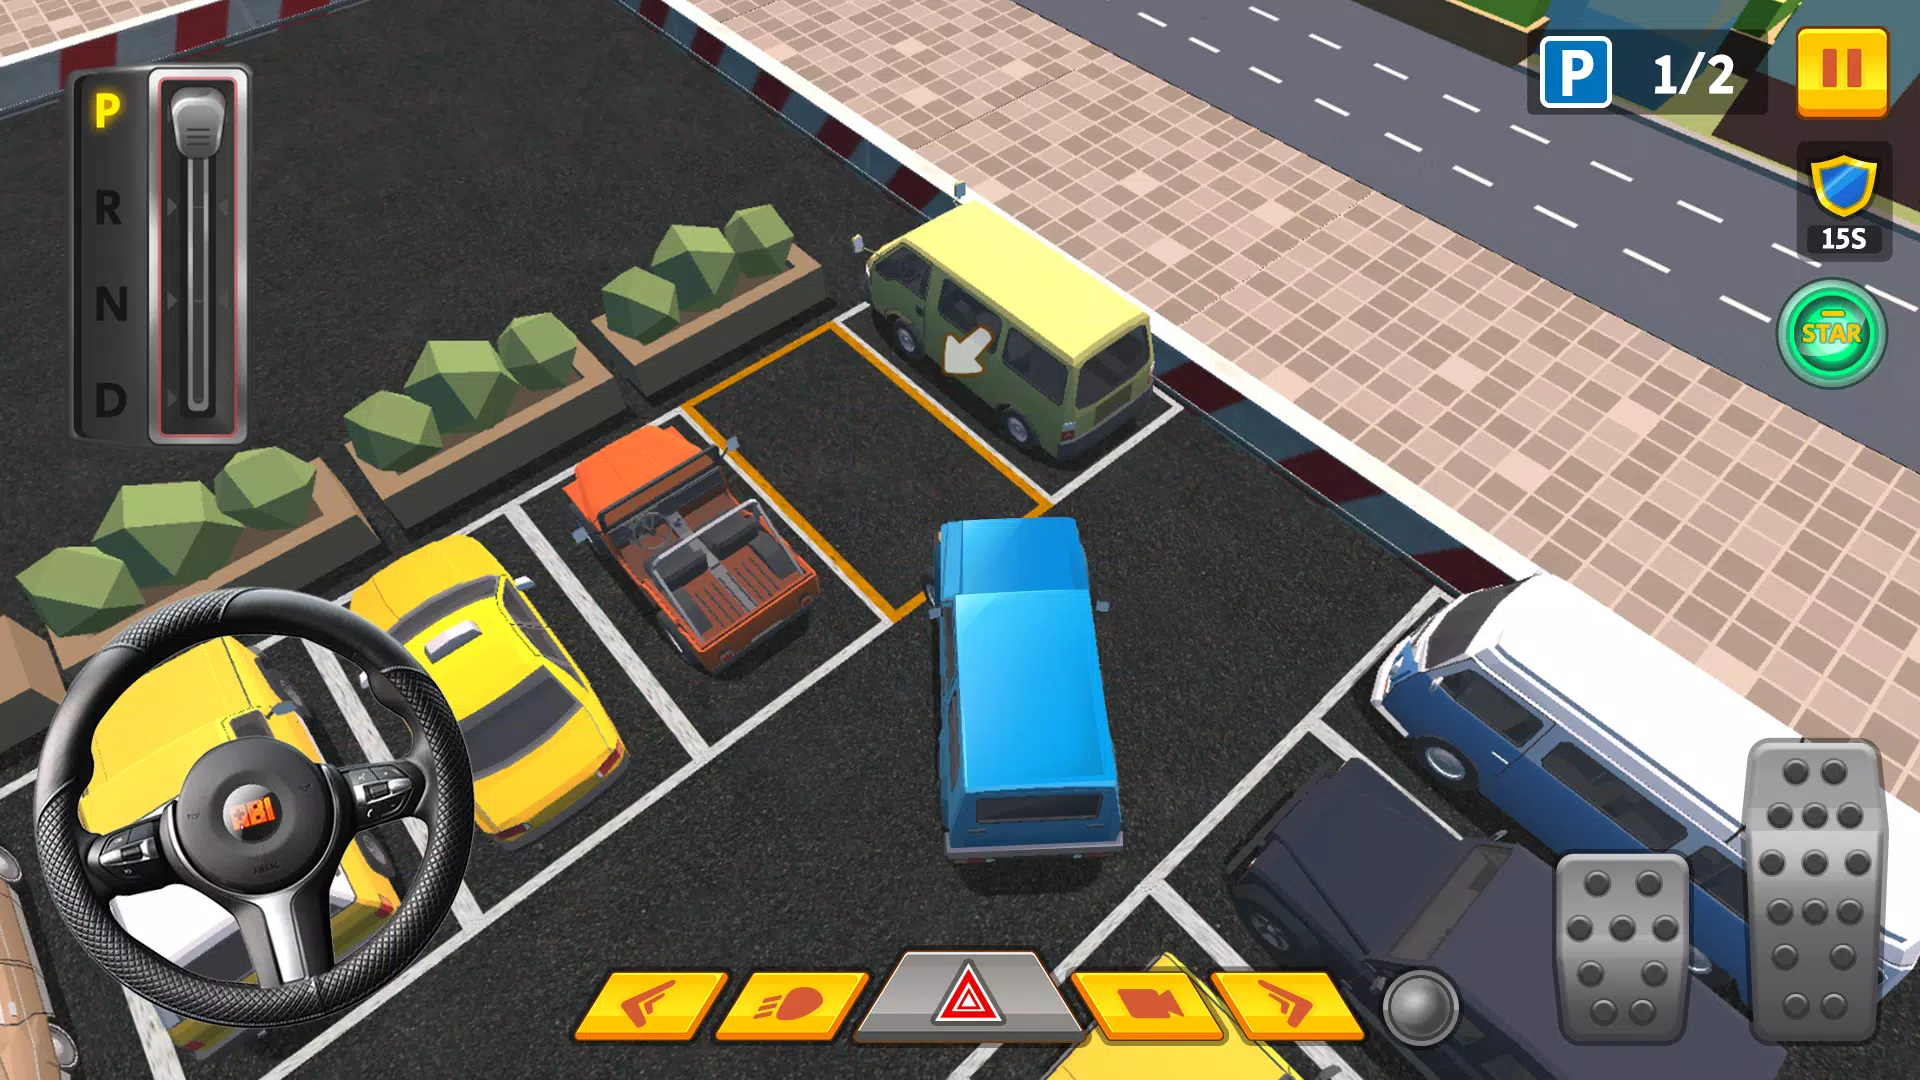 Car Parking Pro - Car Parking Game & Driving Game v0.3.4 Apk Mod